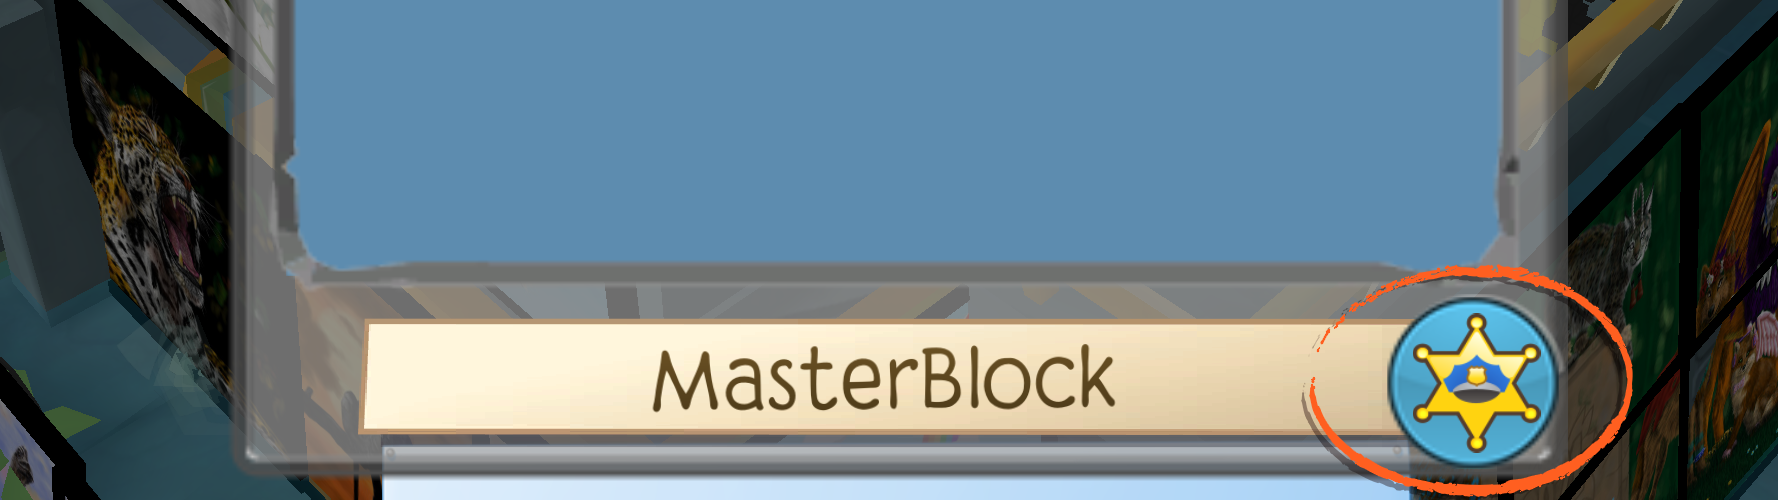 Masterblock_Report.png